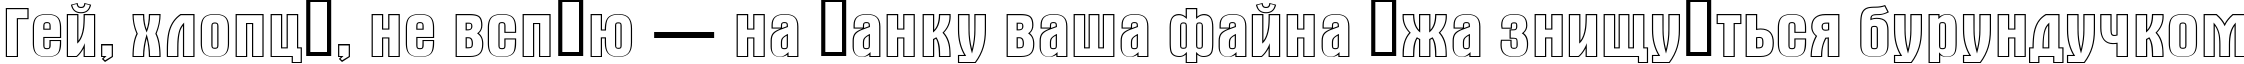 Пример написания шрифтом a_AlternaOtl текста на украинском